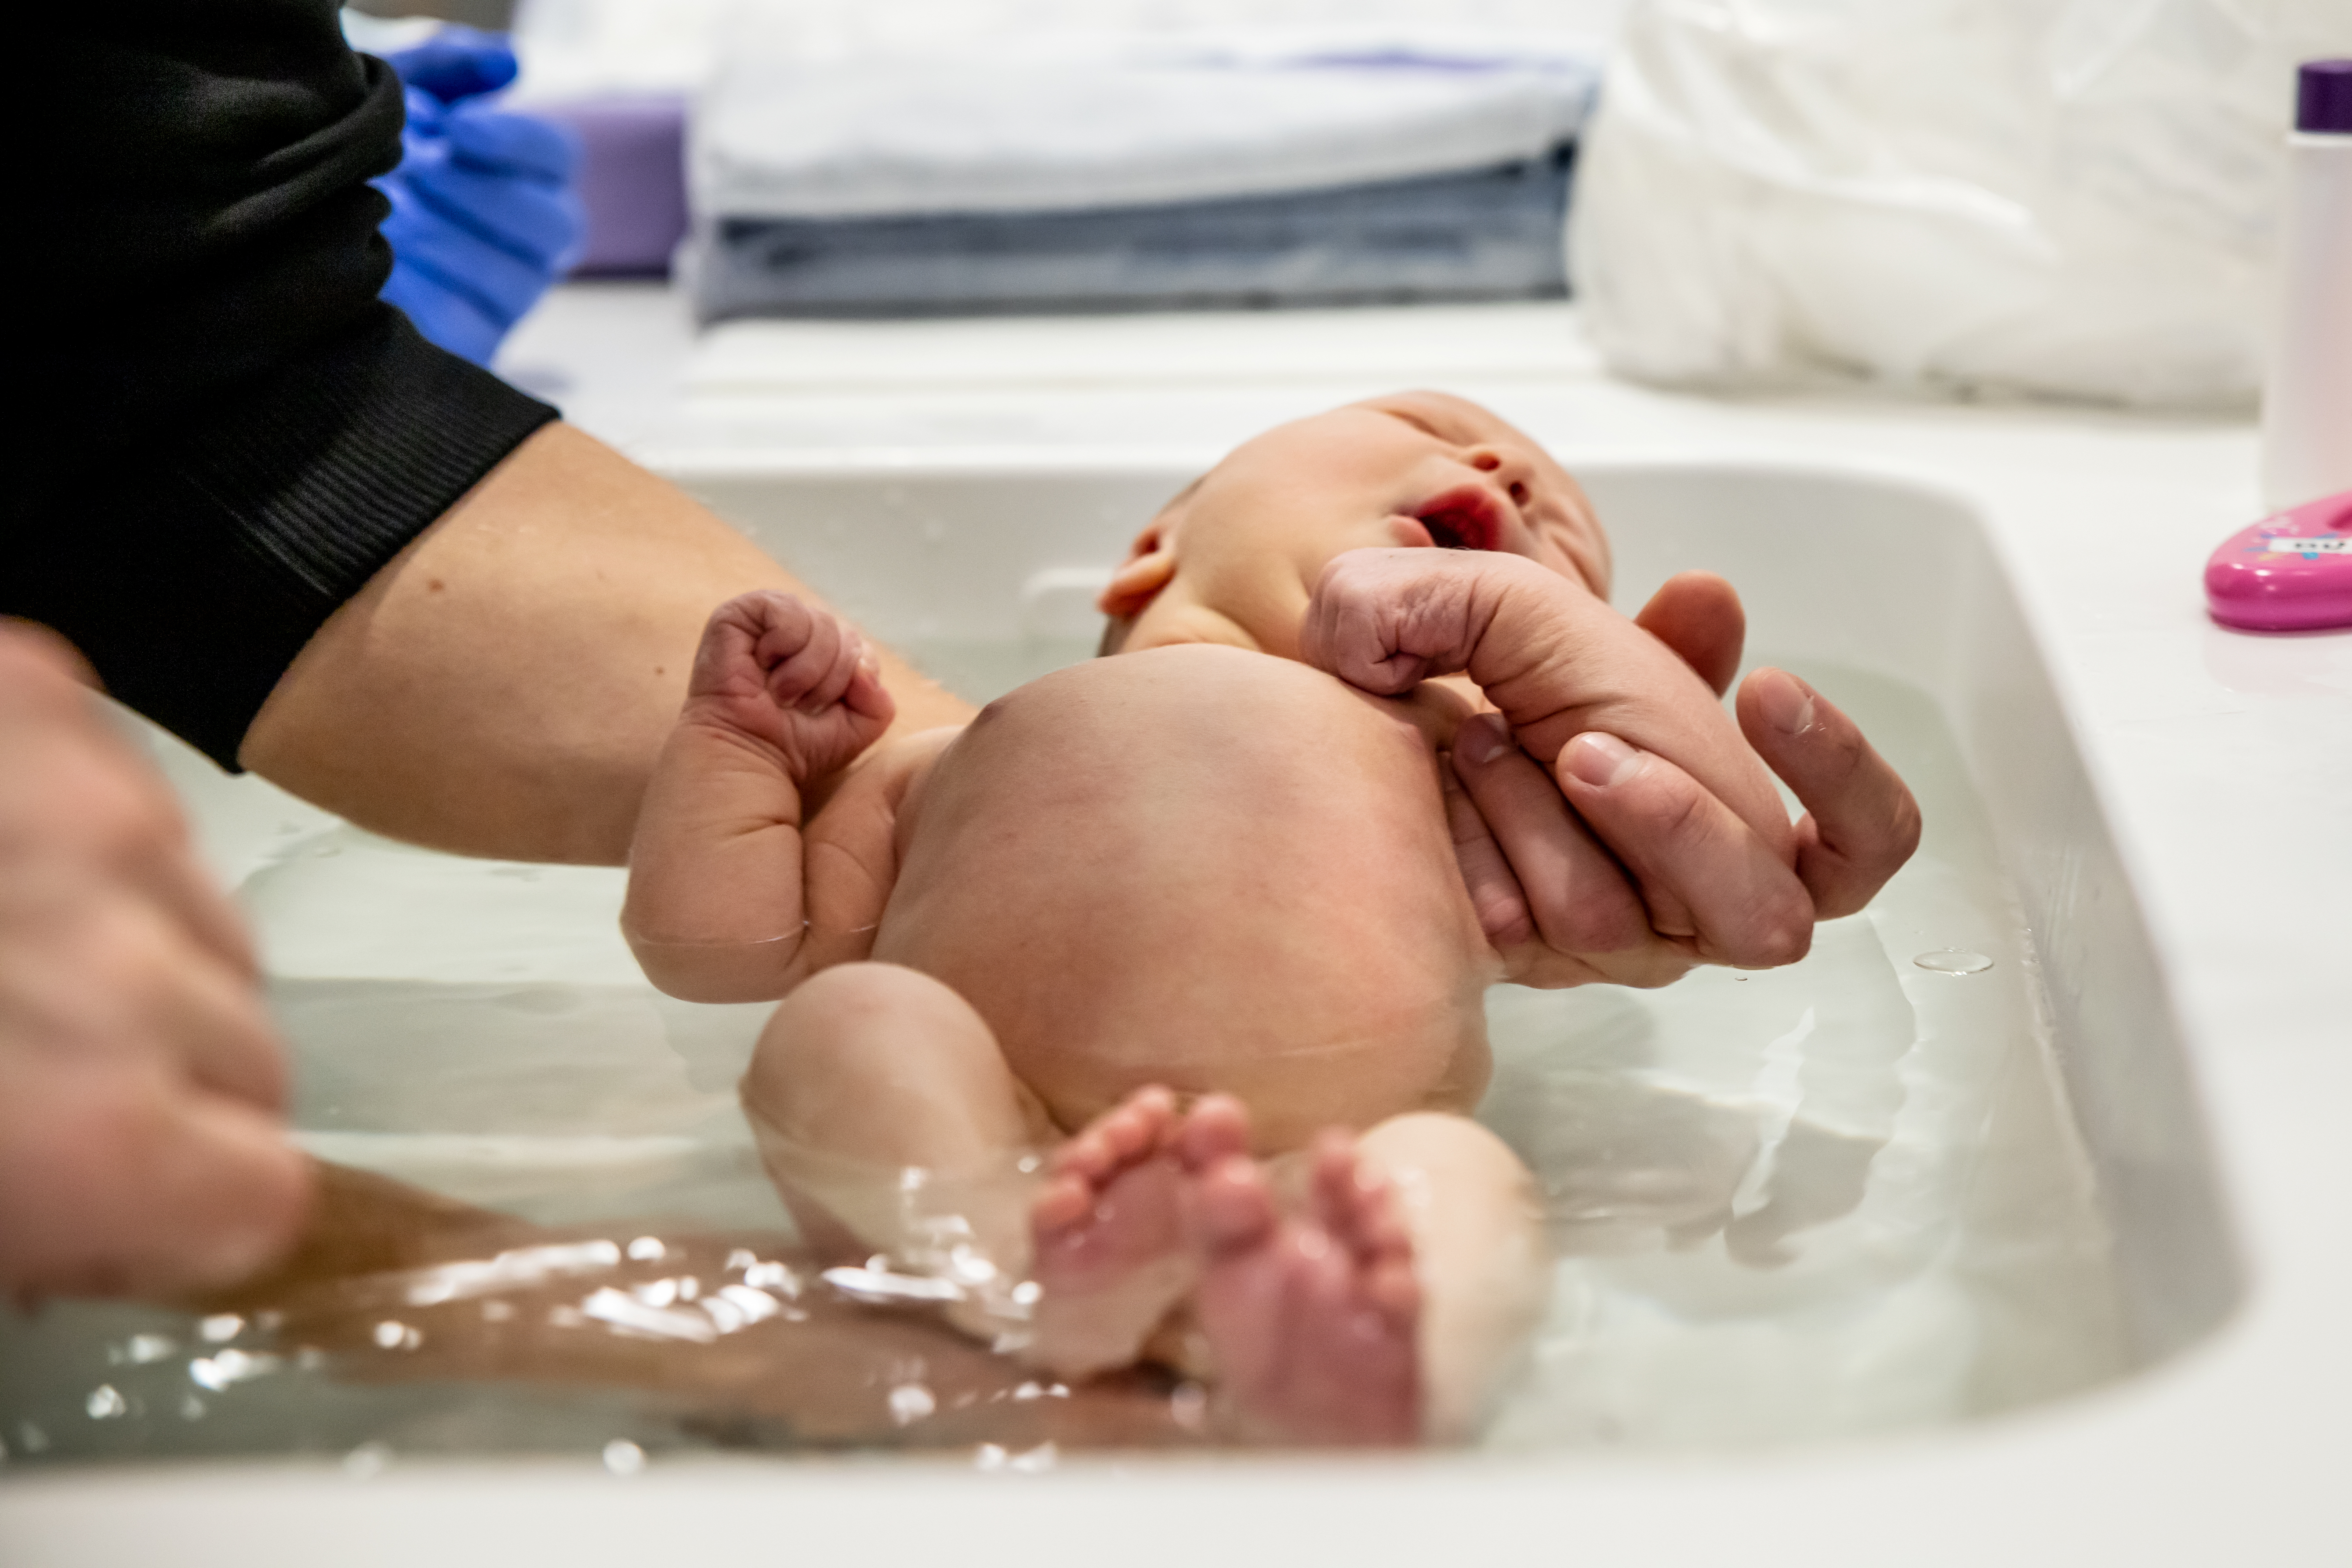 Ett nyfött barn badar i en balja, blir hållen av en vuxen person.